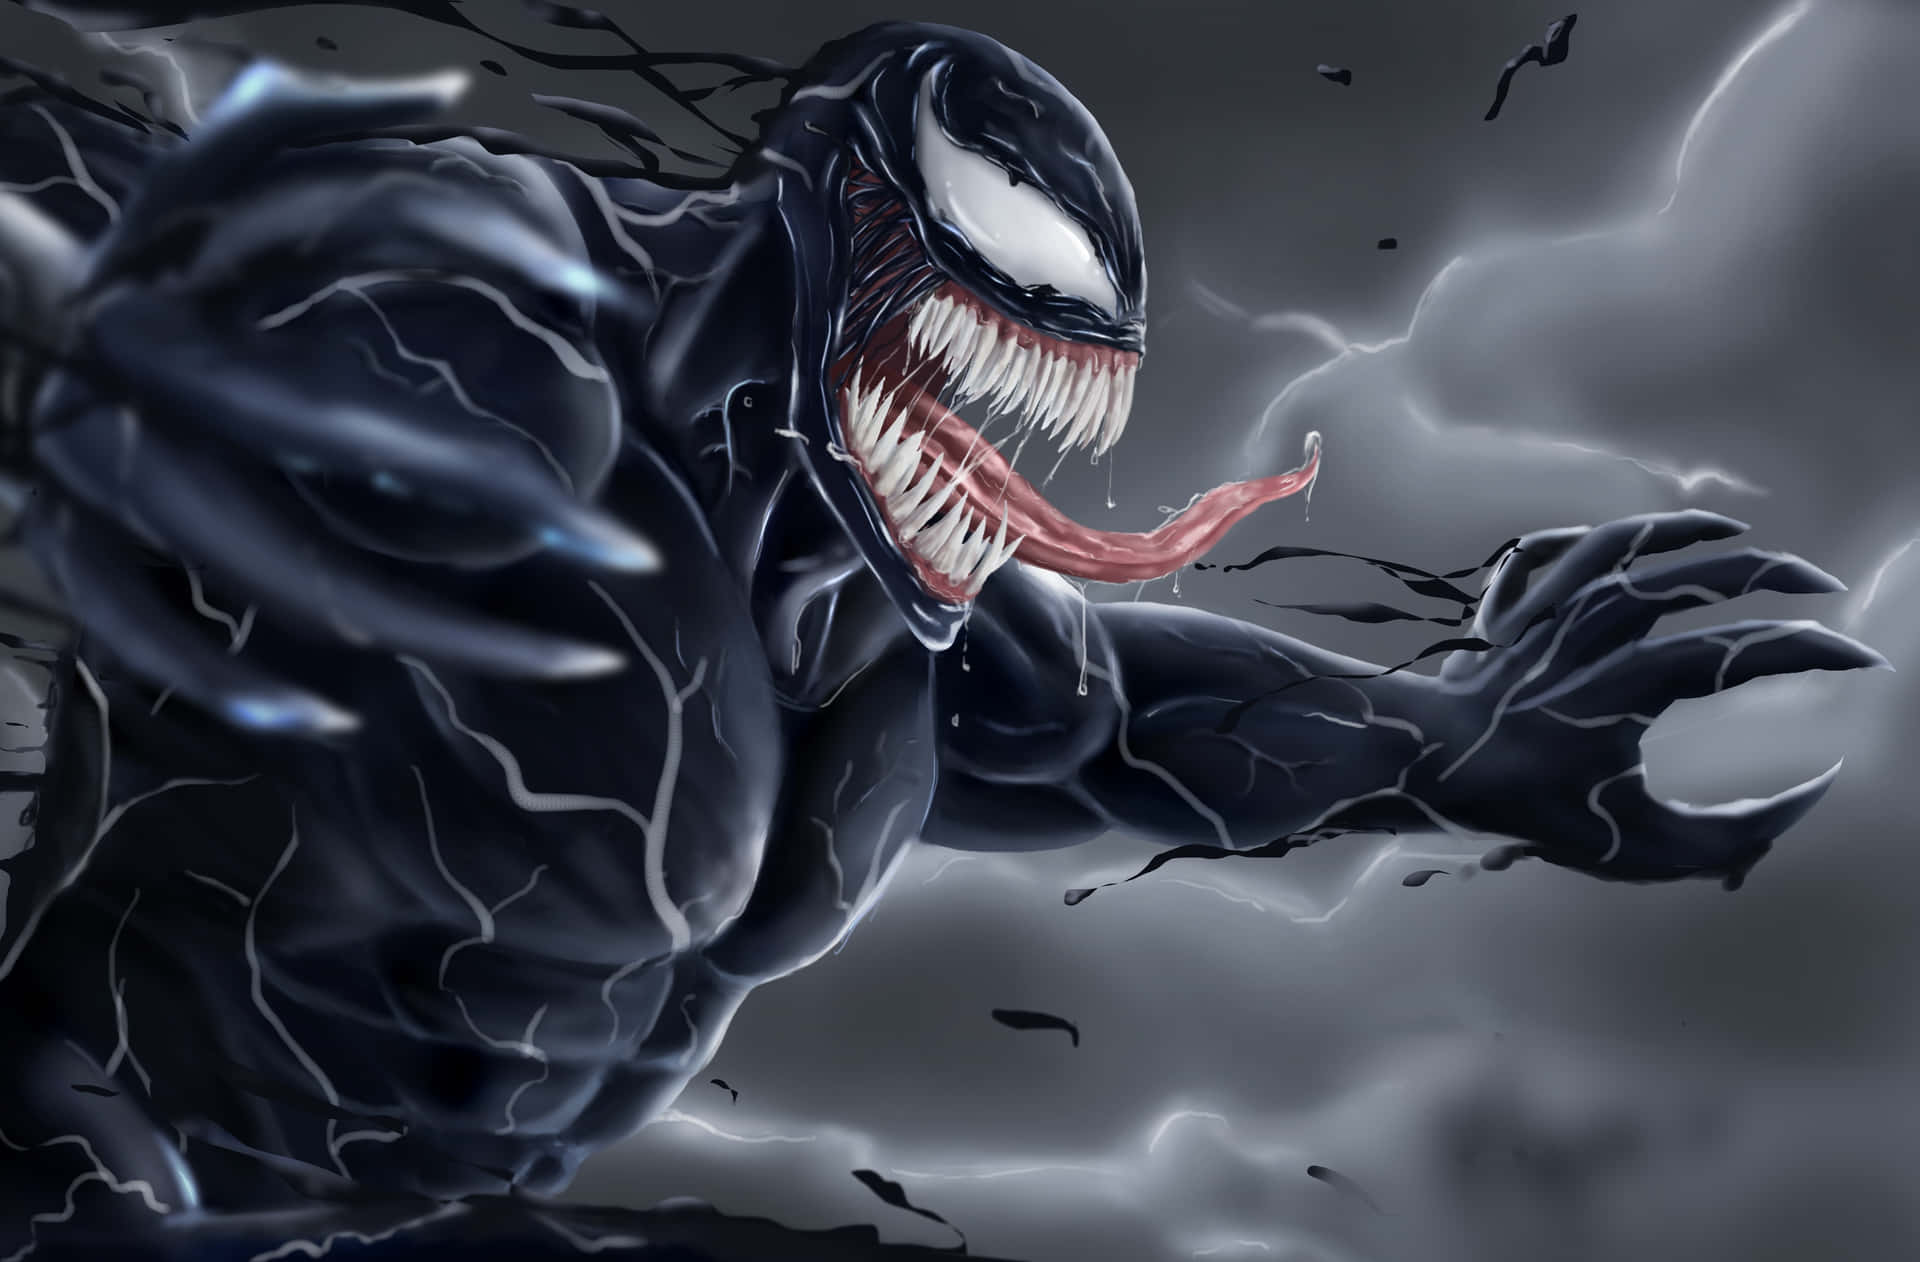 Kännkraften Av Venom!